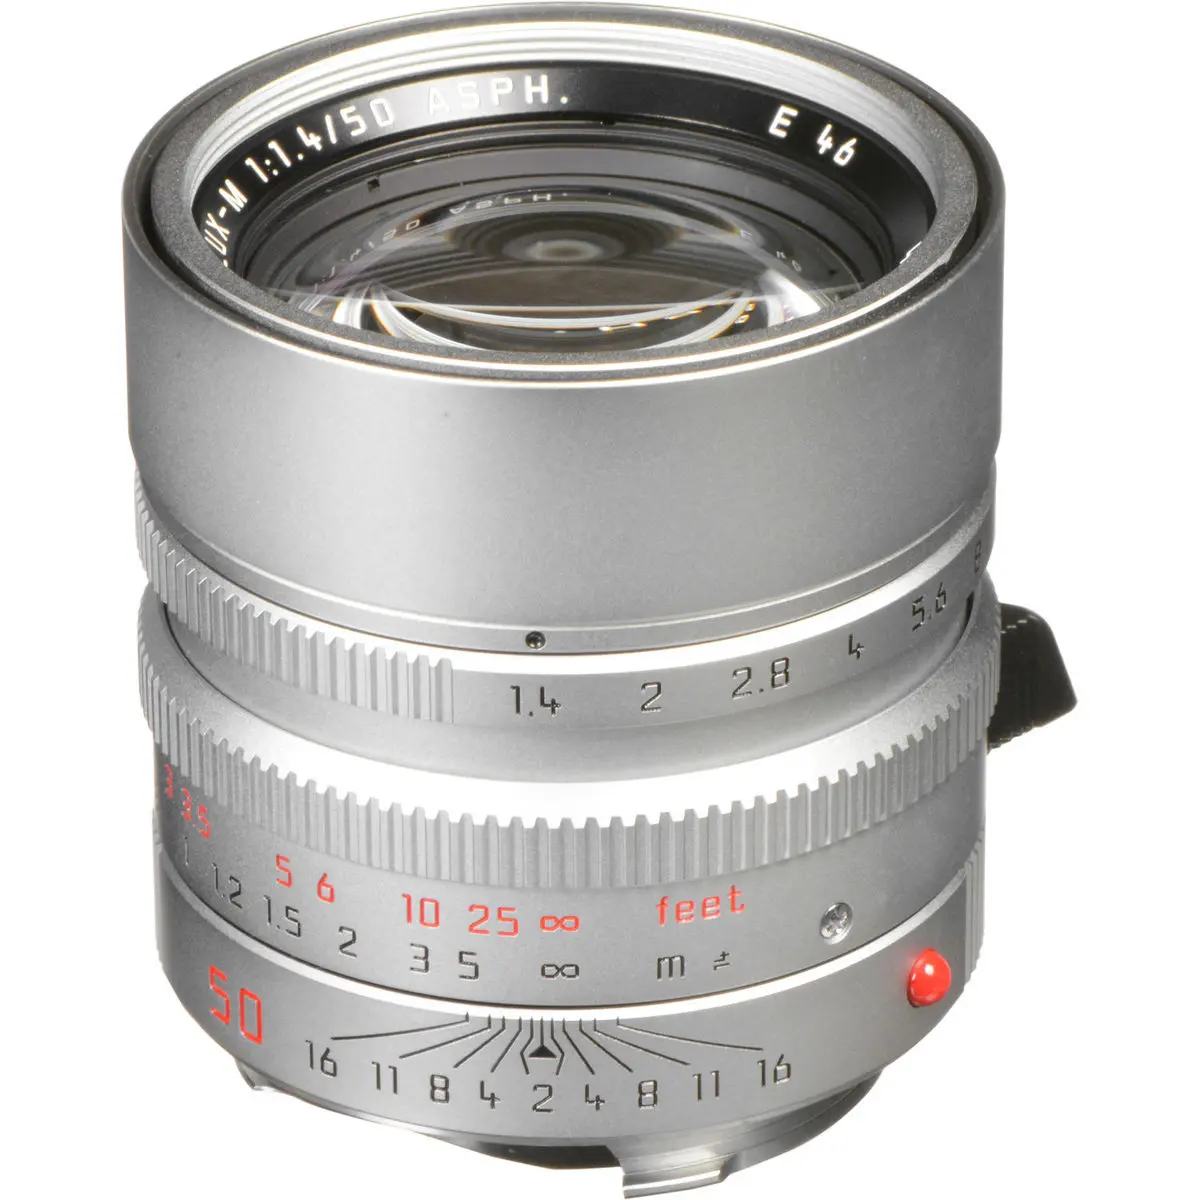 1. LEICA SUMMILUX-M 50 mm f/1.4 ASPH Silver Lens